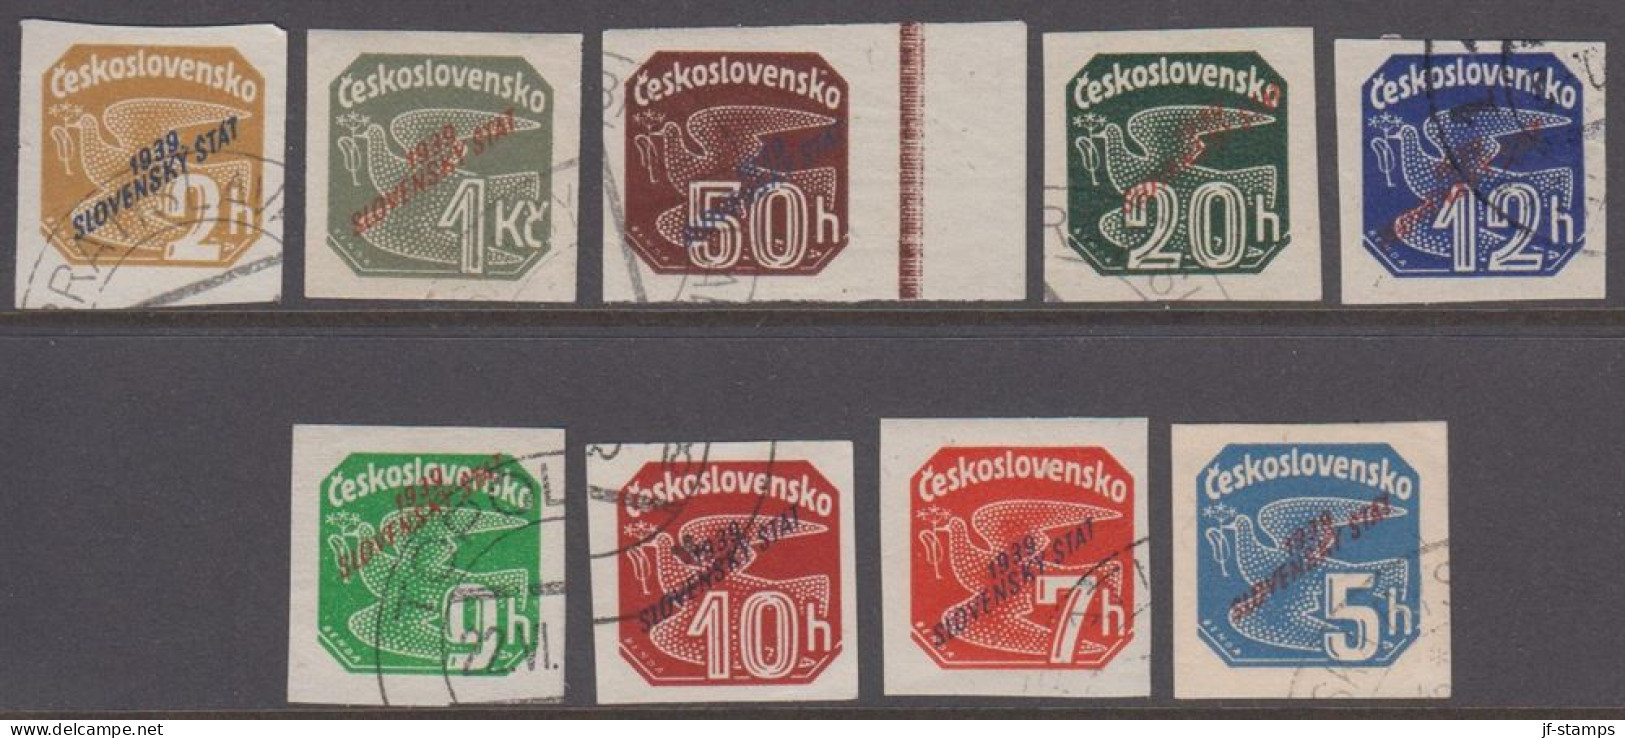 1939. SLOVENSKO 1939 / Slovenský štát On Newspaper Stamps. Complete Set Of 9 Stamps.  (Michel 26-34) - JF418434 - Oblitérés